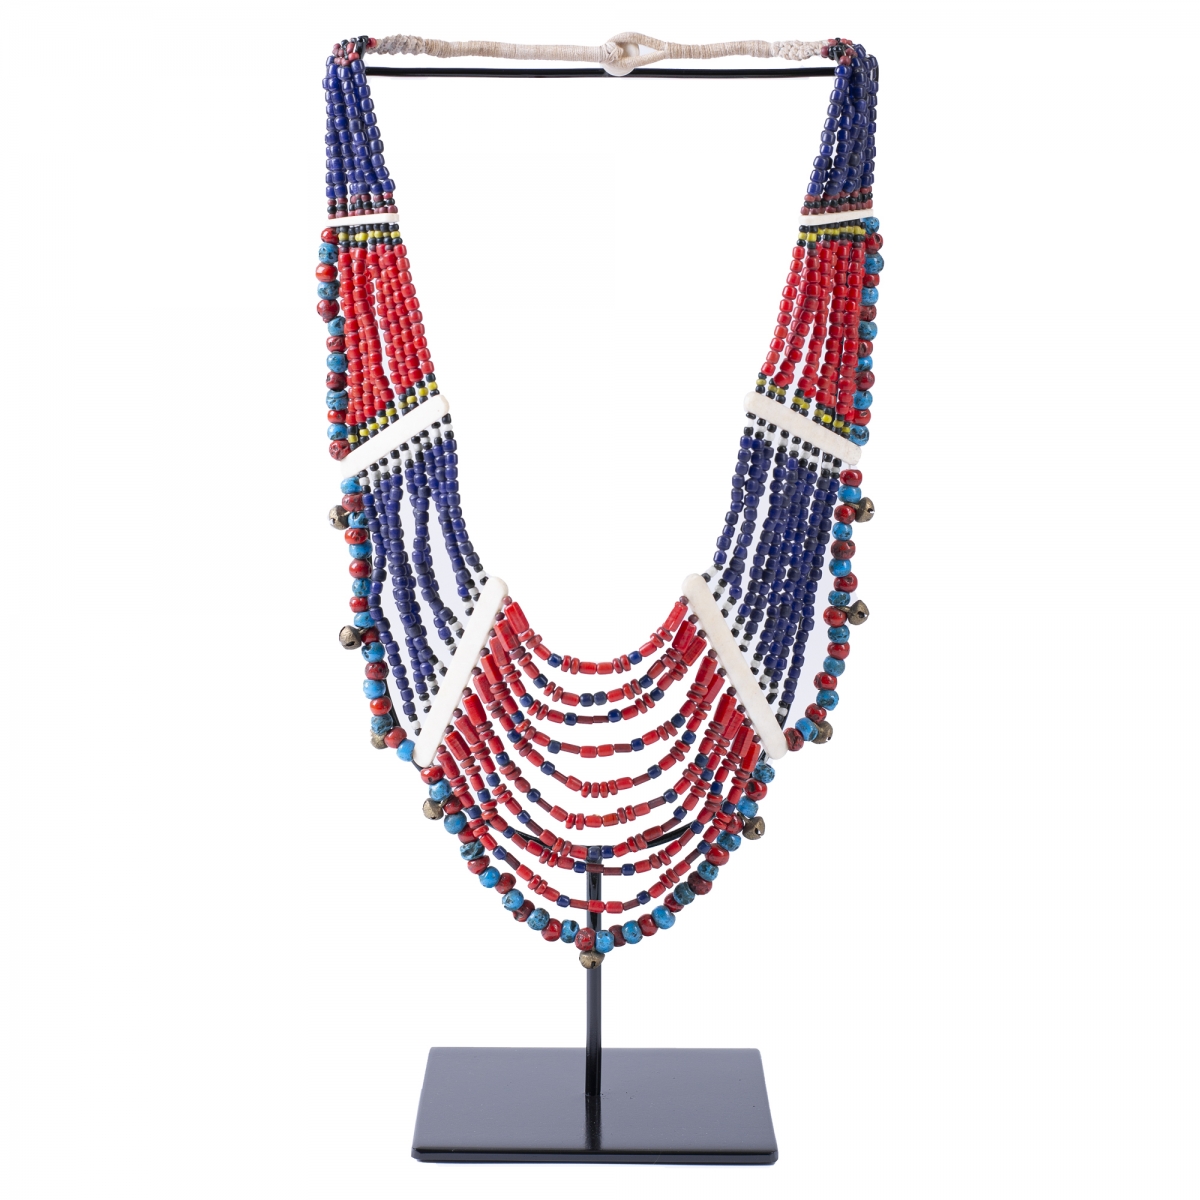 

Этническое ожерелье на подставке Line Beads